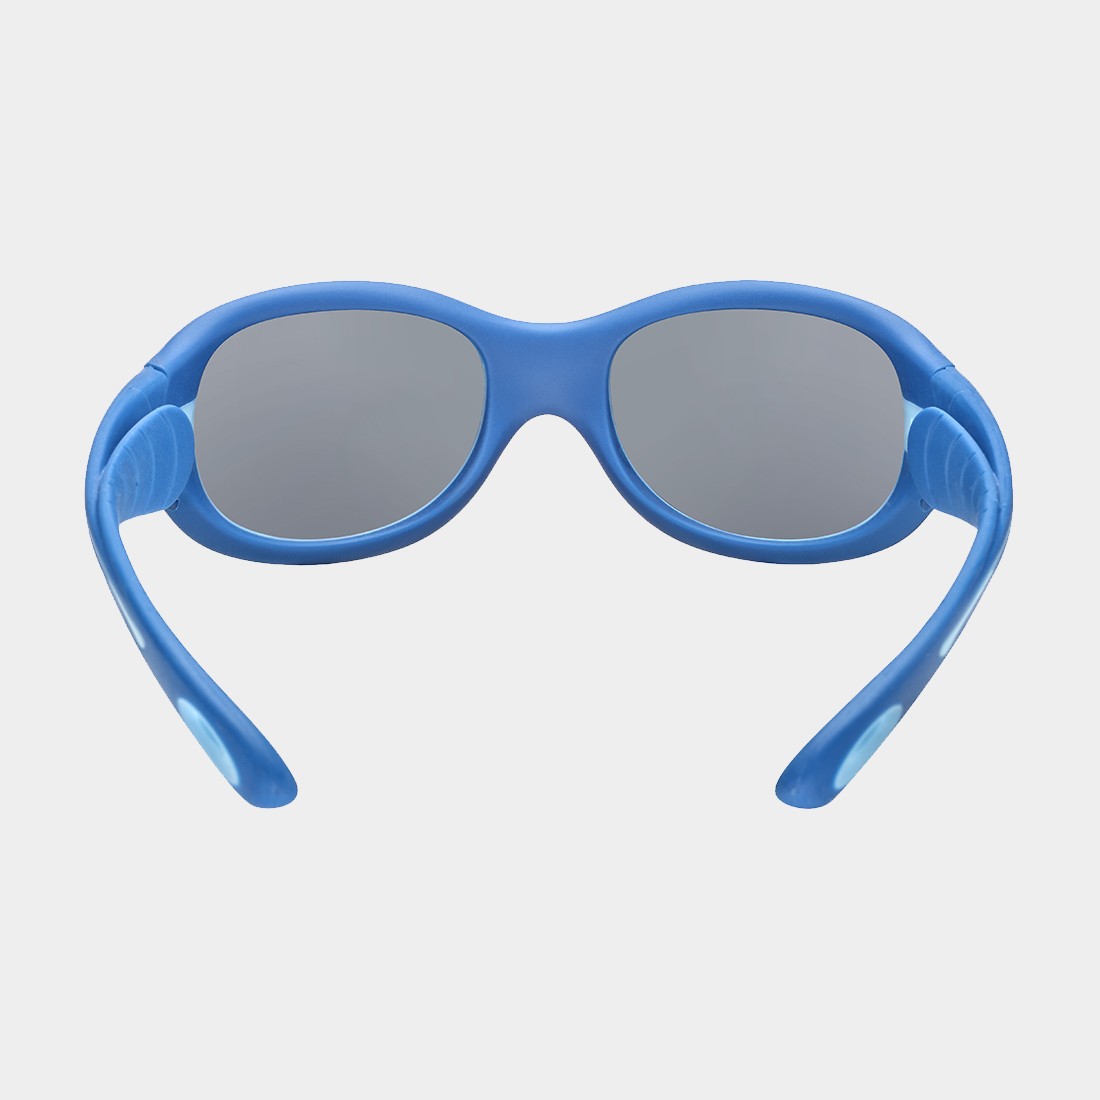 cebe-s-kimo-goggles-junior-extra-extra-small-marine-blue